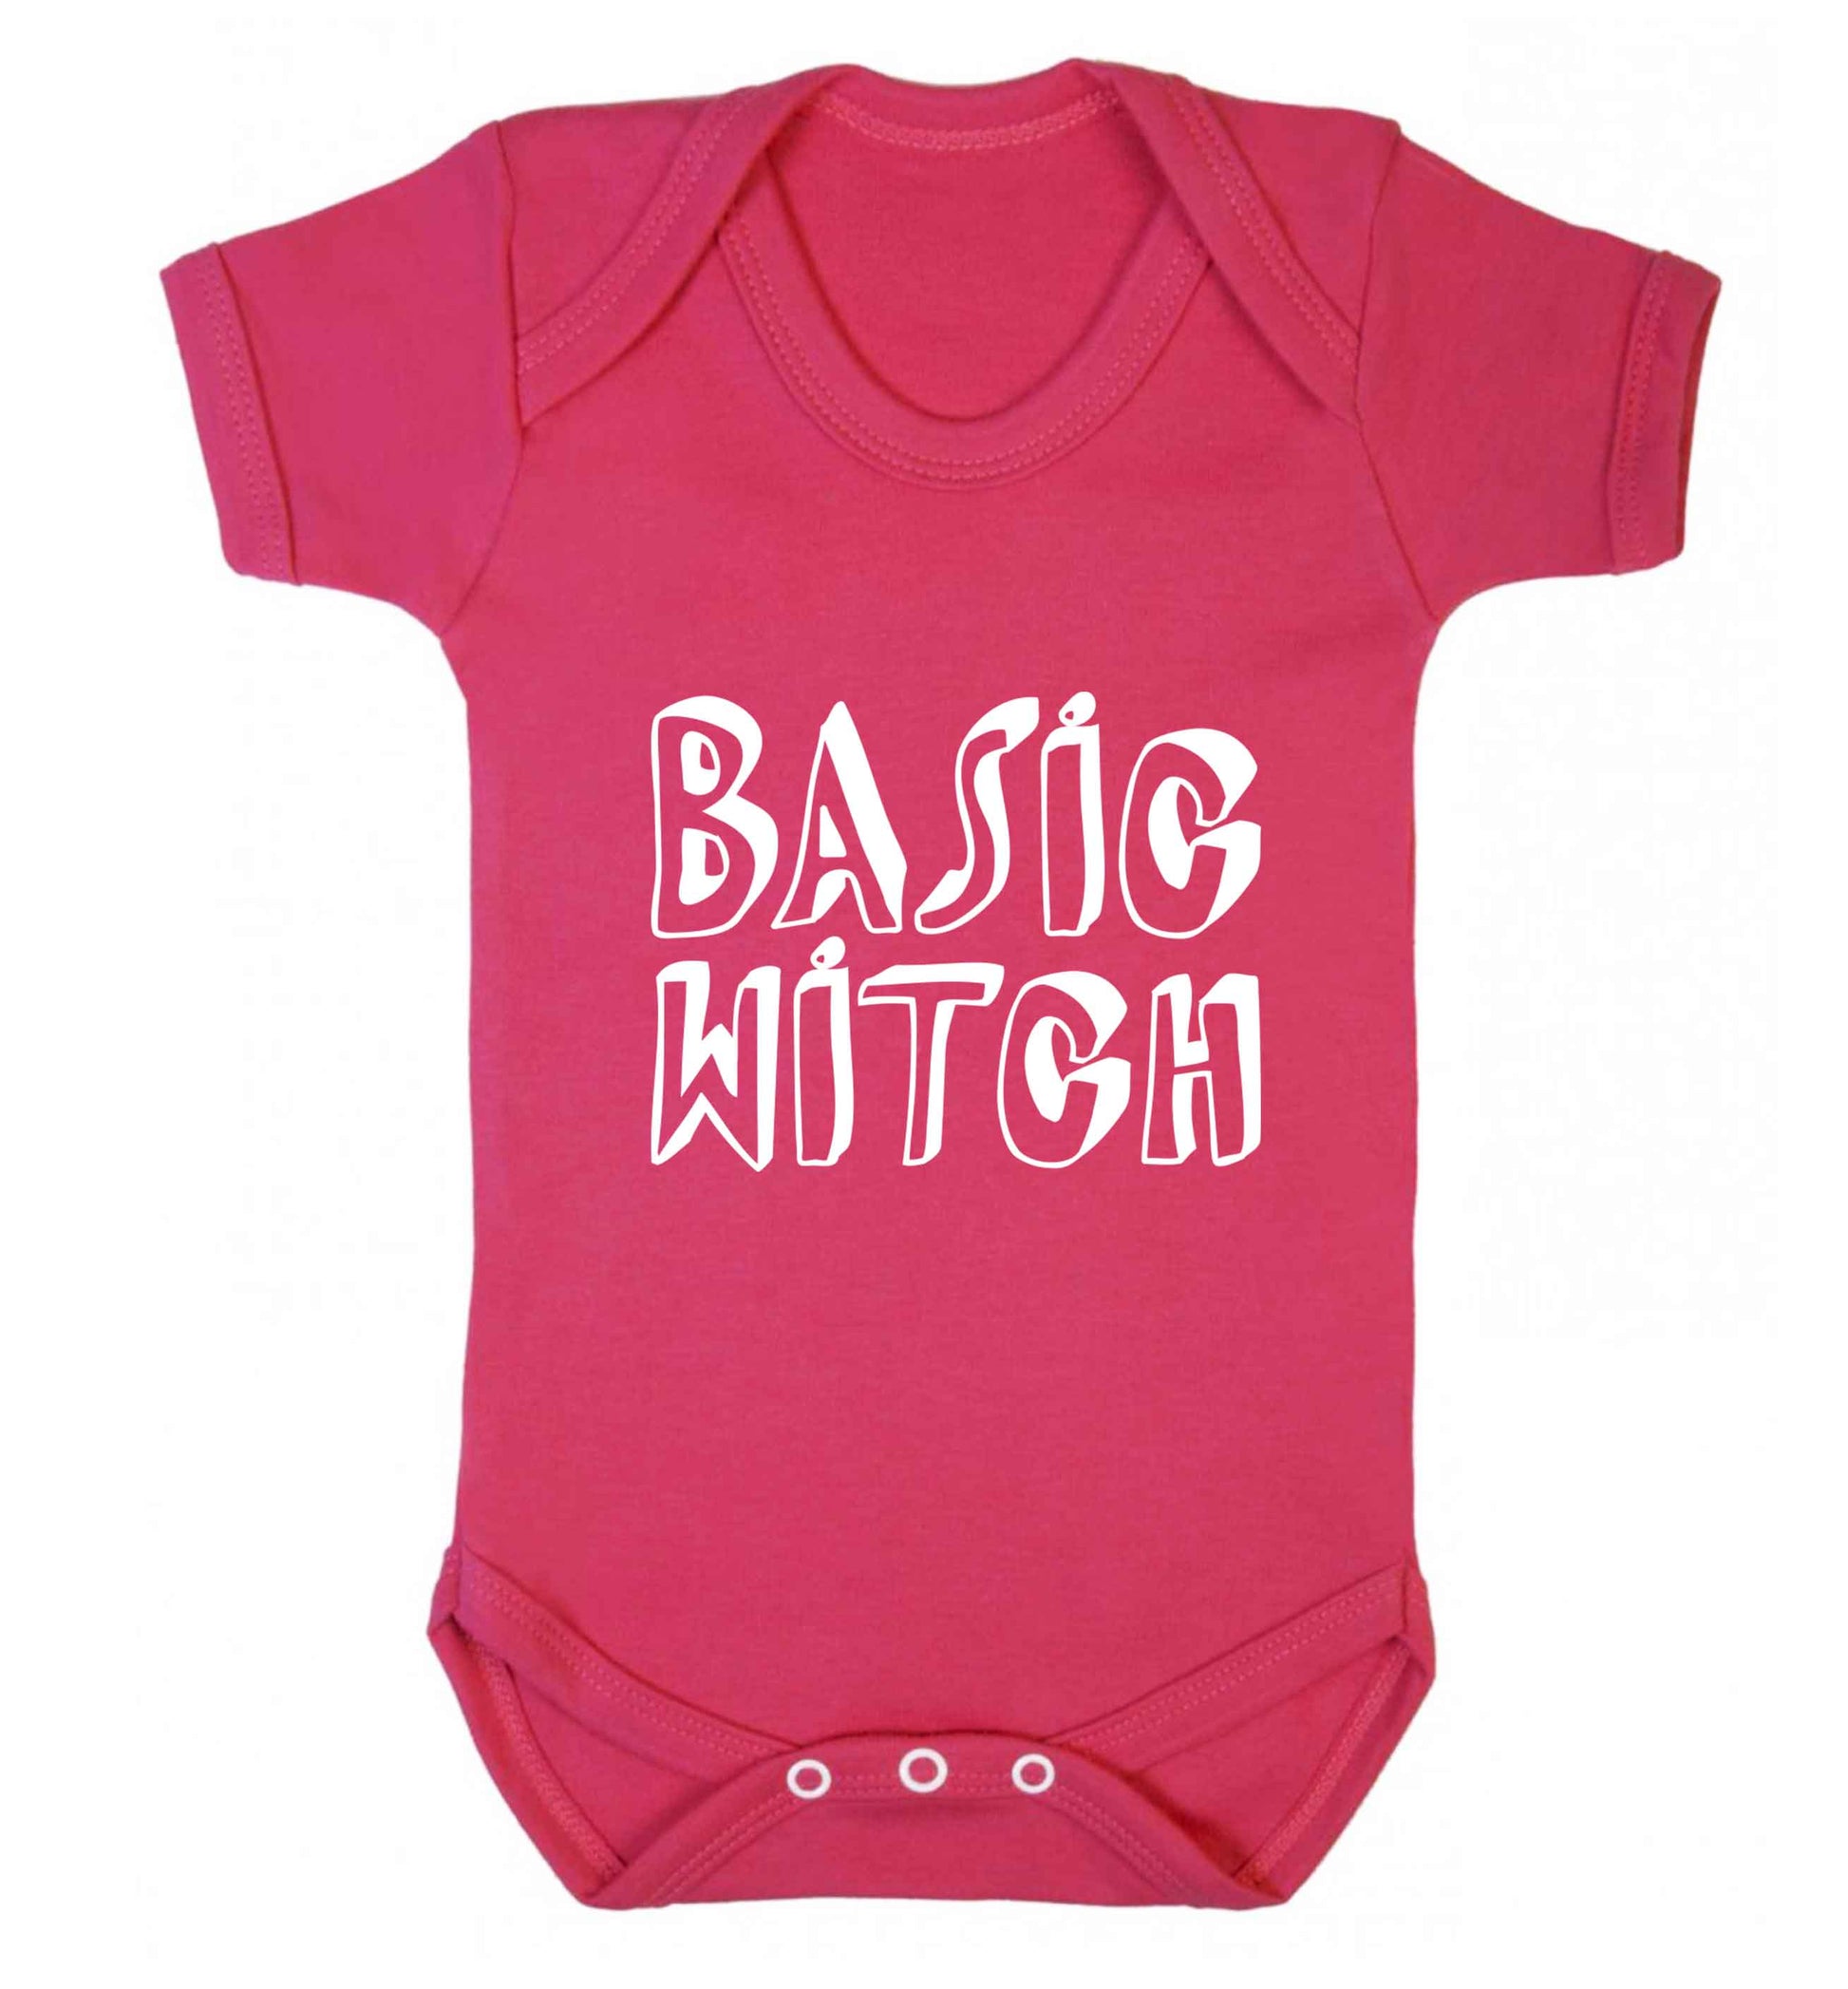 Basic witch baby vest dark pink 18-24 months